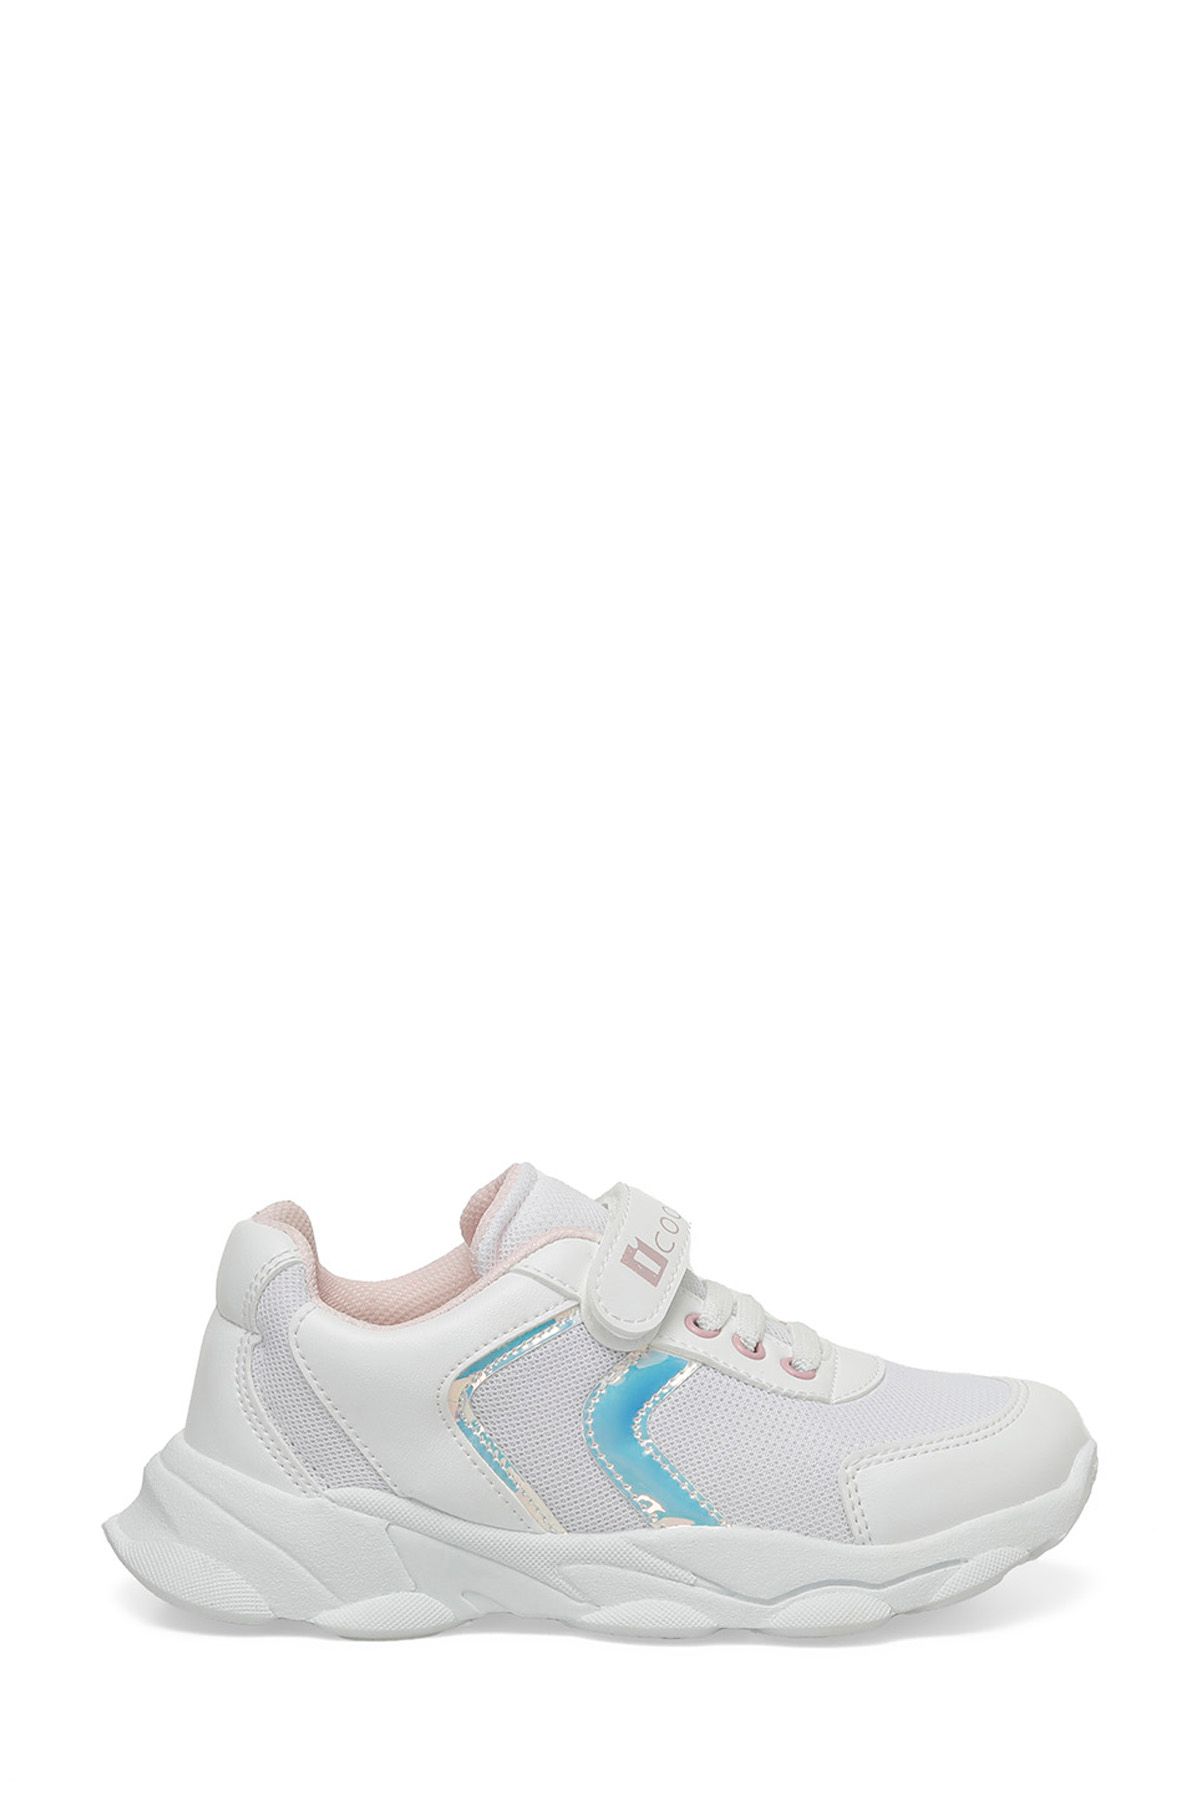 Icool LOTUS 4FX Beyaz Kız Çocuk Spor Ayakkabı